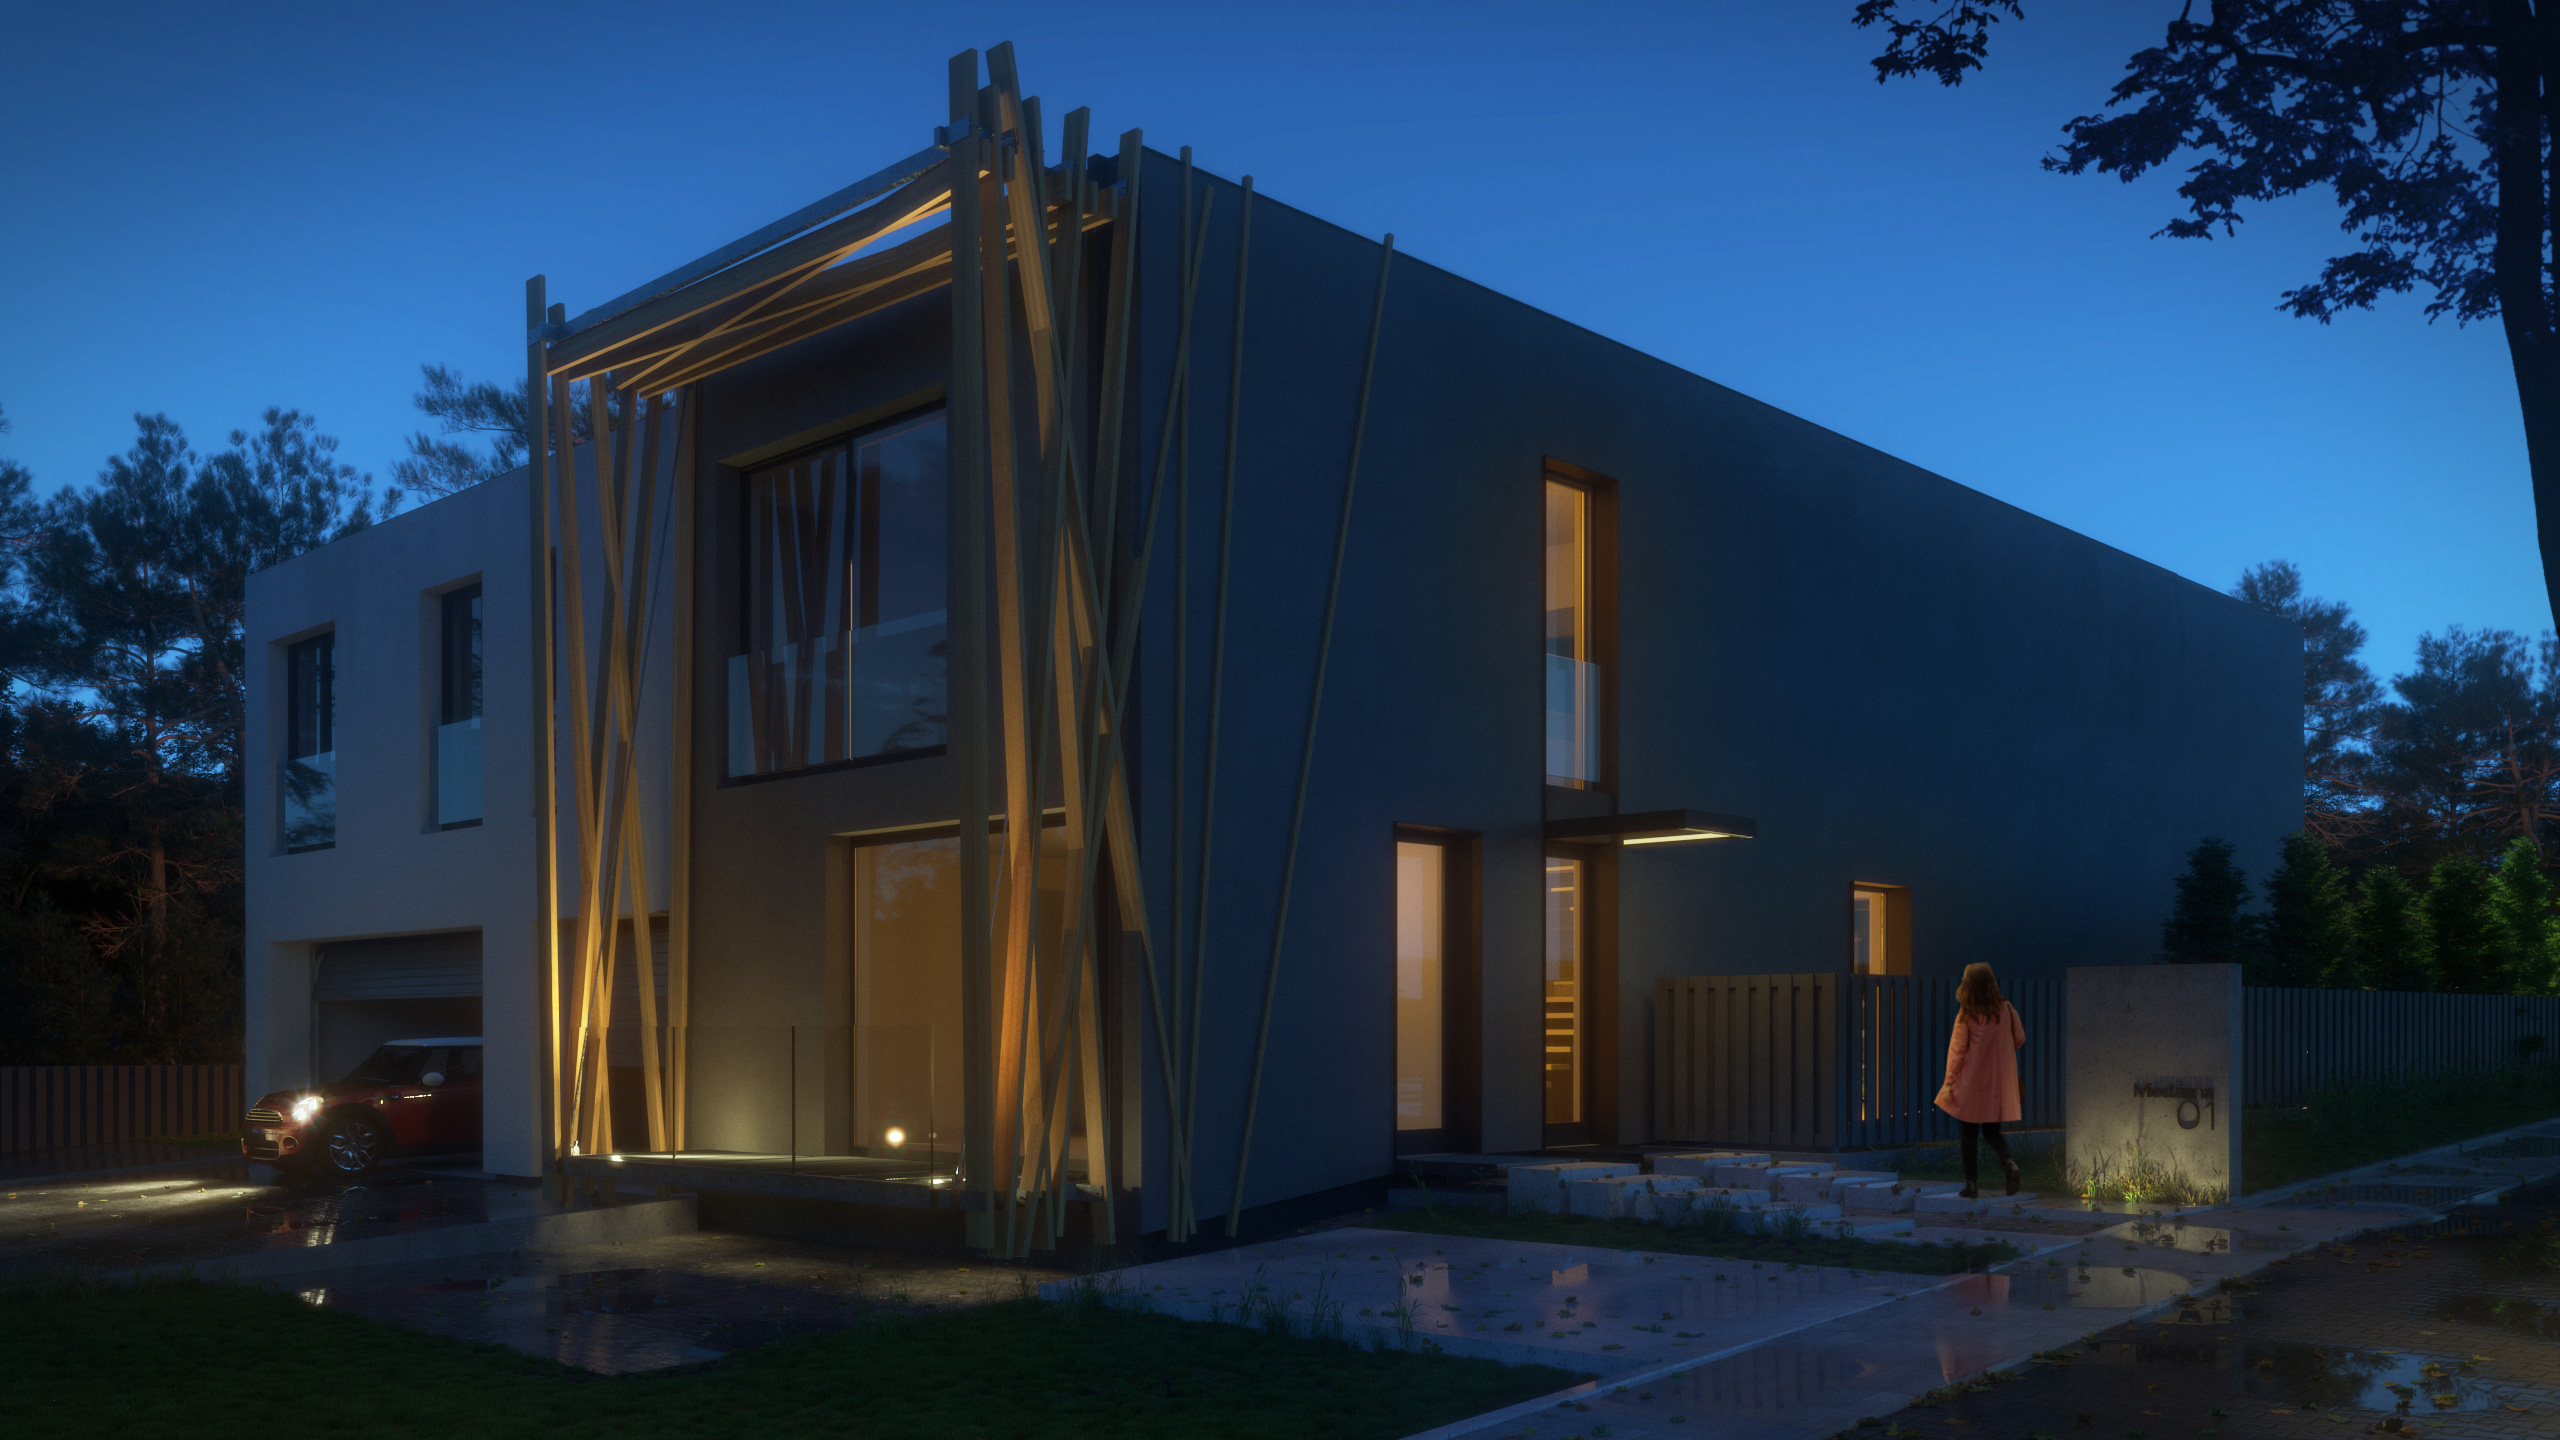 Wizualizacja 3D domu jednorodzinnego - noc